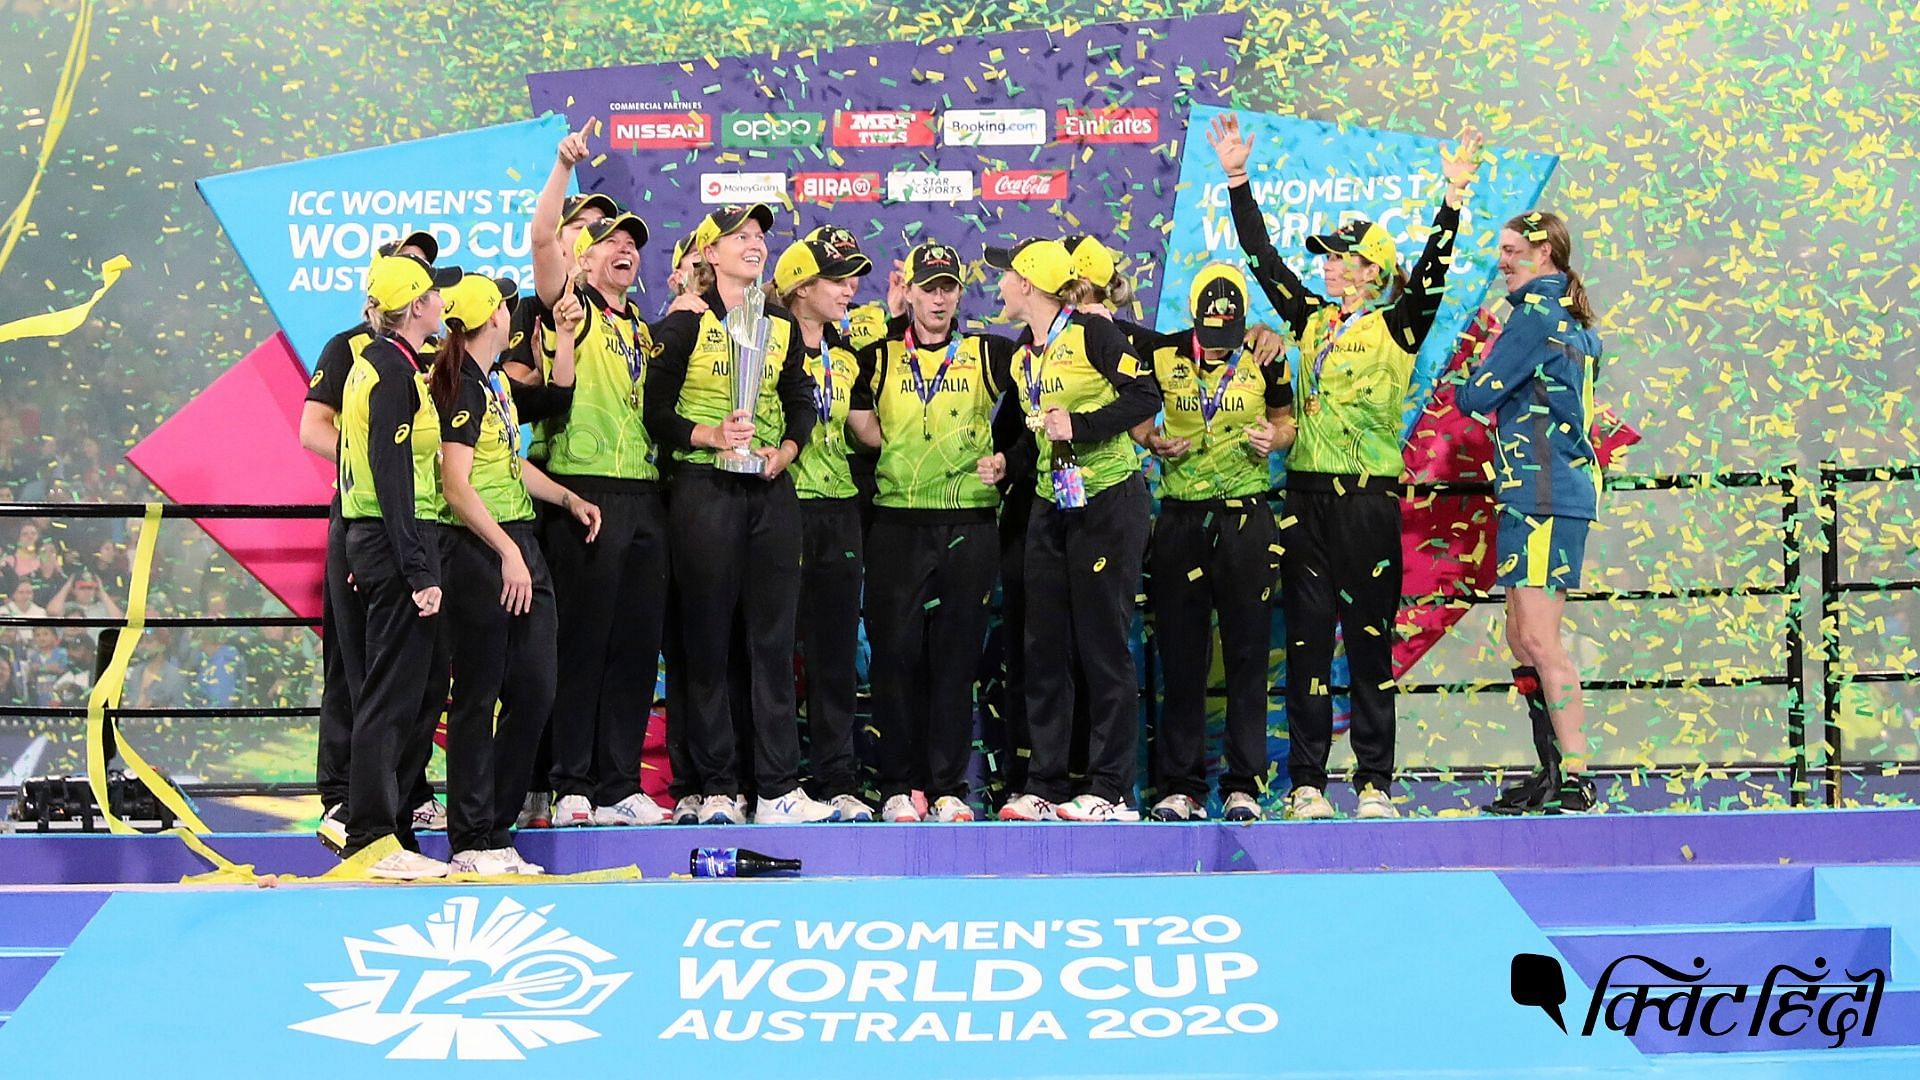 ऑस्ट्रेलिया ने पांचवी बार महिला टी20 वर्ल्ड कप का खिताब अपने नाम कर लिया